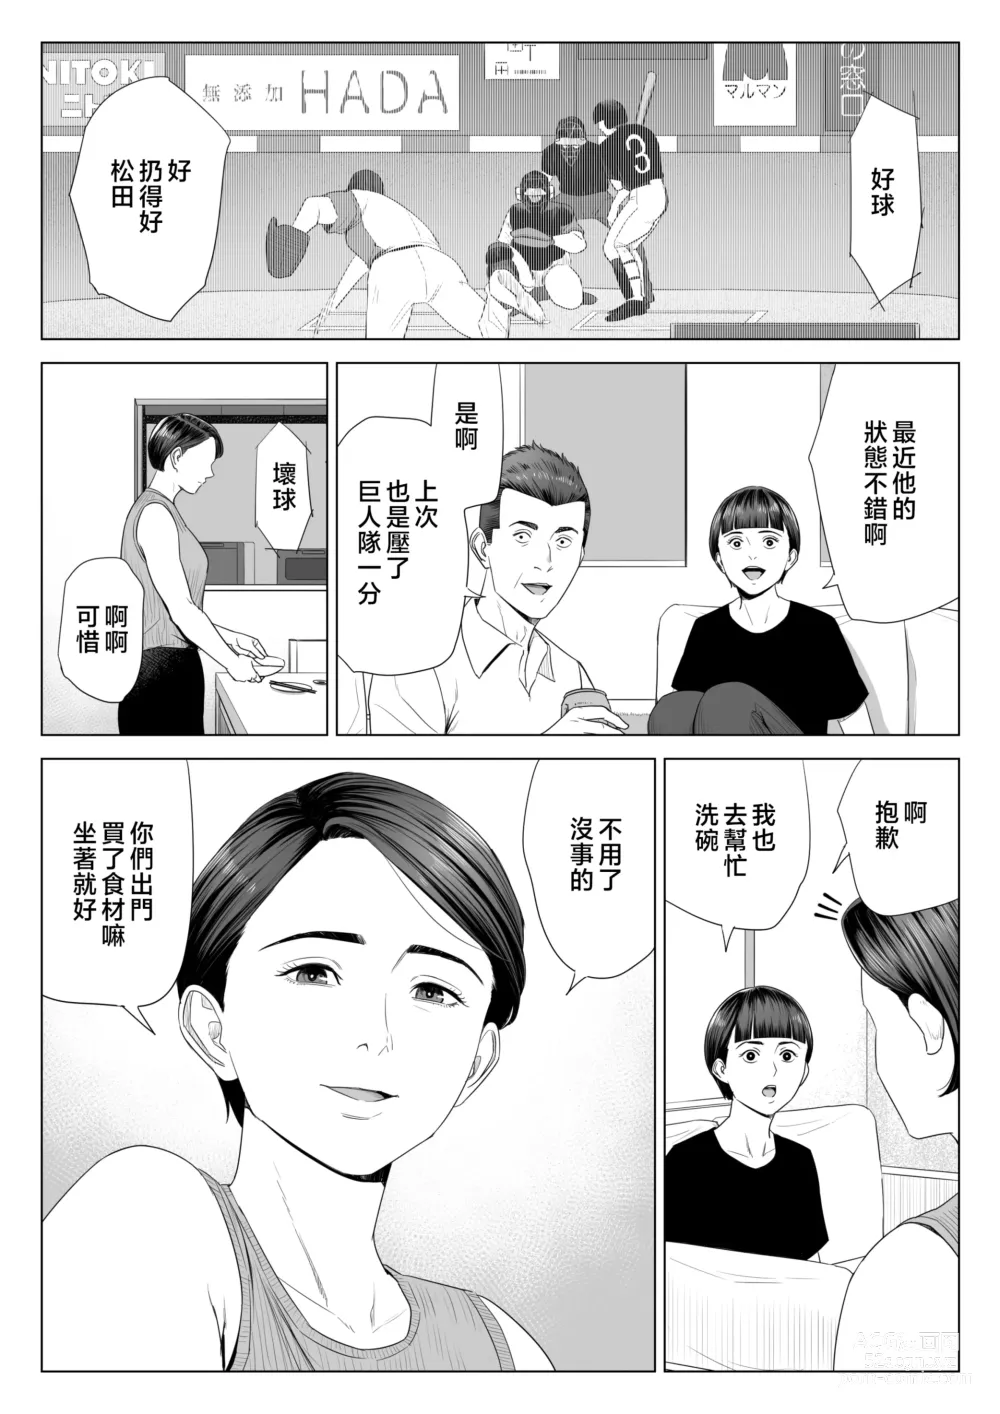 Page 56 of doujinshi Gibo no Tsukaeru Karada.